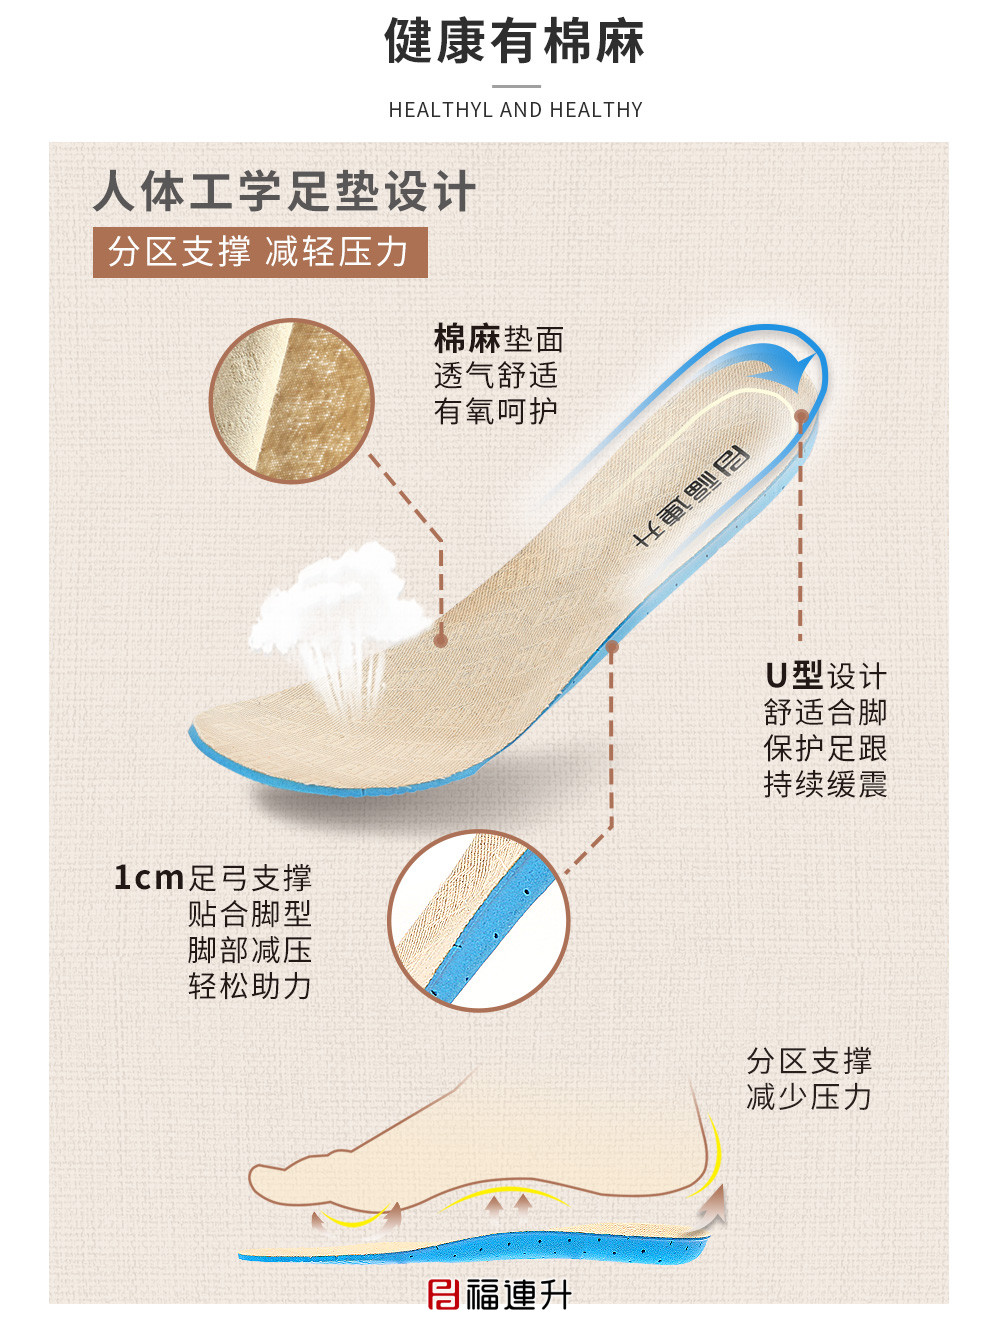 老北京布鞋女士休閑運動漫步鞋鞋棉麻舒適透氣中年鞋圖片